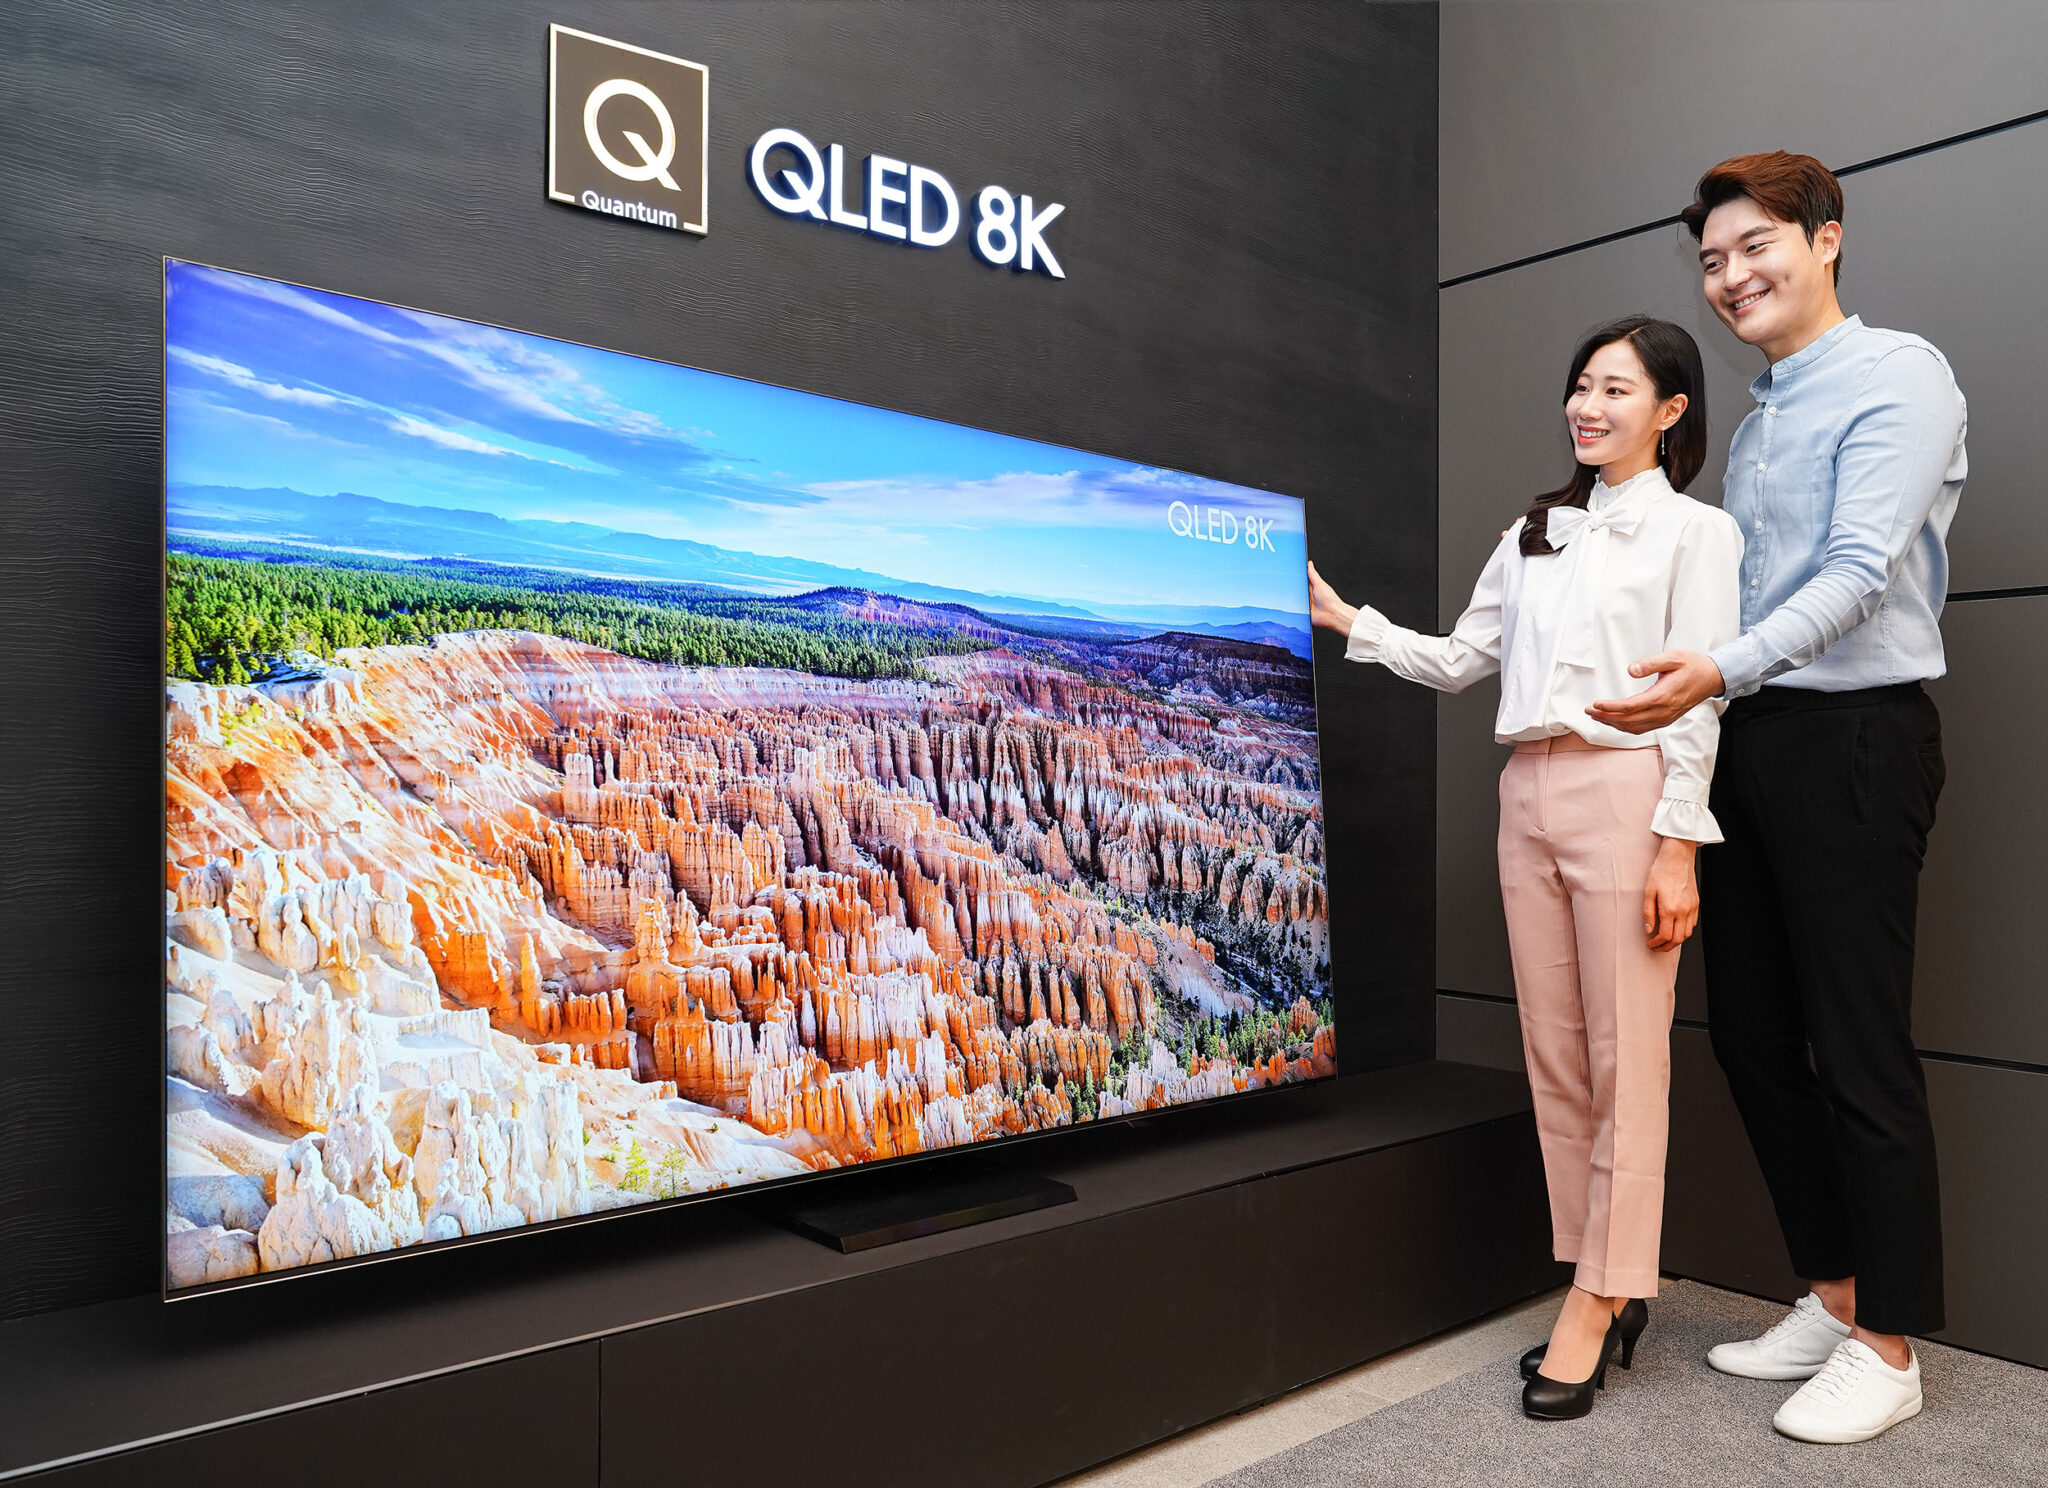 Телевизоры qled 8k. Телевизор Samsung QLED 8k. Телевизор самсунг QLED 8к. Телевизор Samsung QLED 8k 2020. Samsung QLED 8k 85 дюймов.